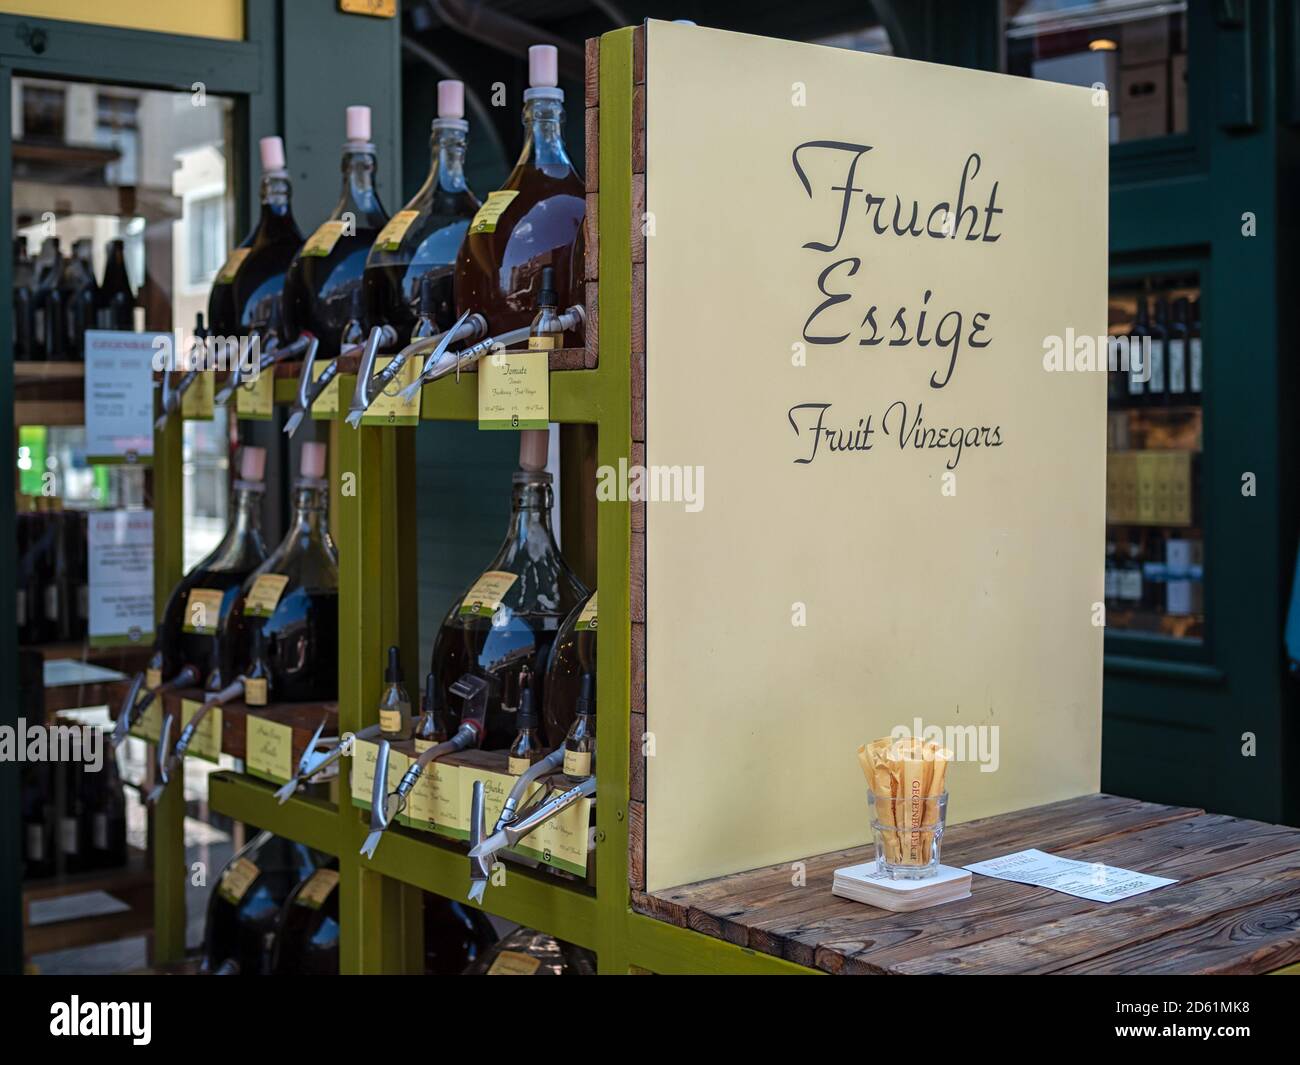 VIENNA, AUSTRIA:  Fruit Vinegars (frucht essige) for sale in delicatessen Stock Photo